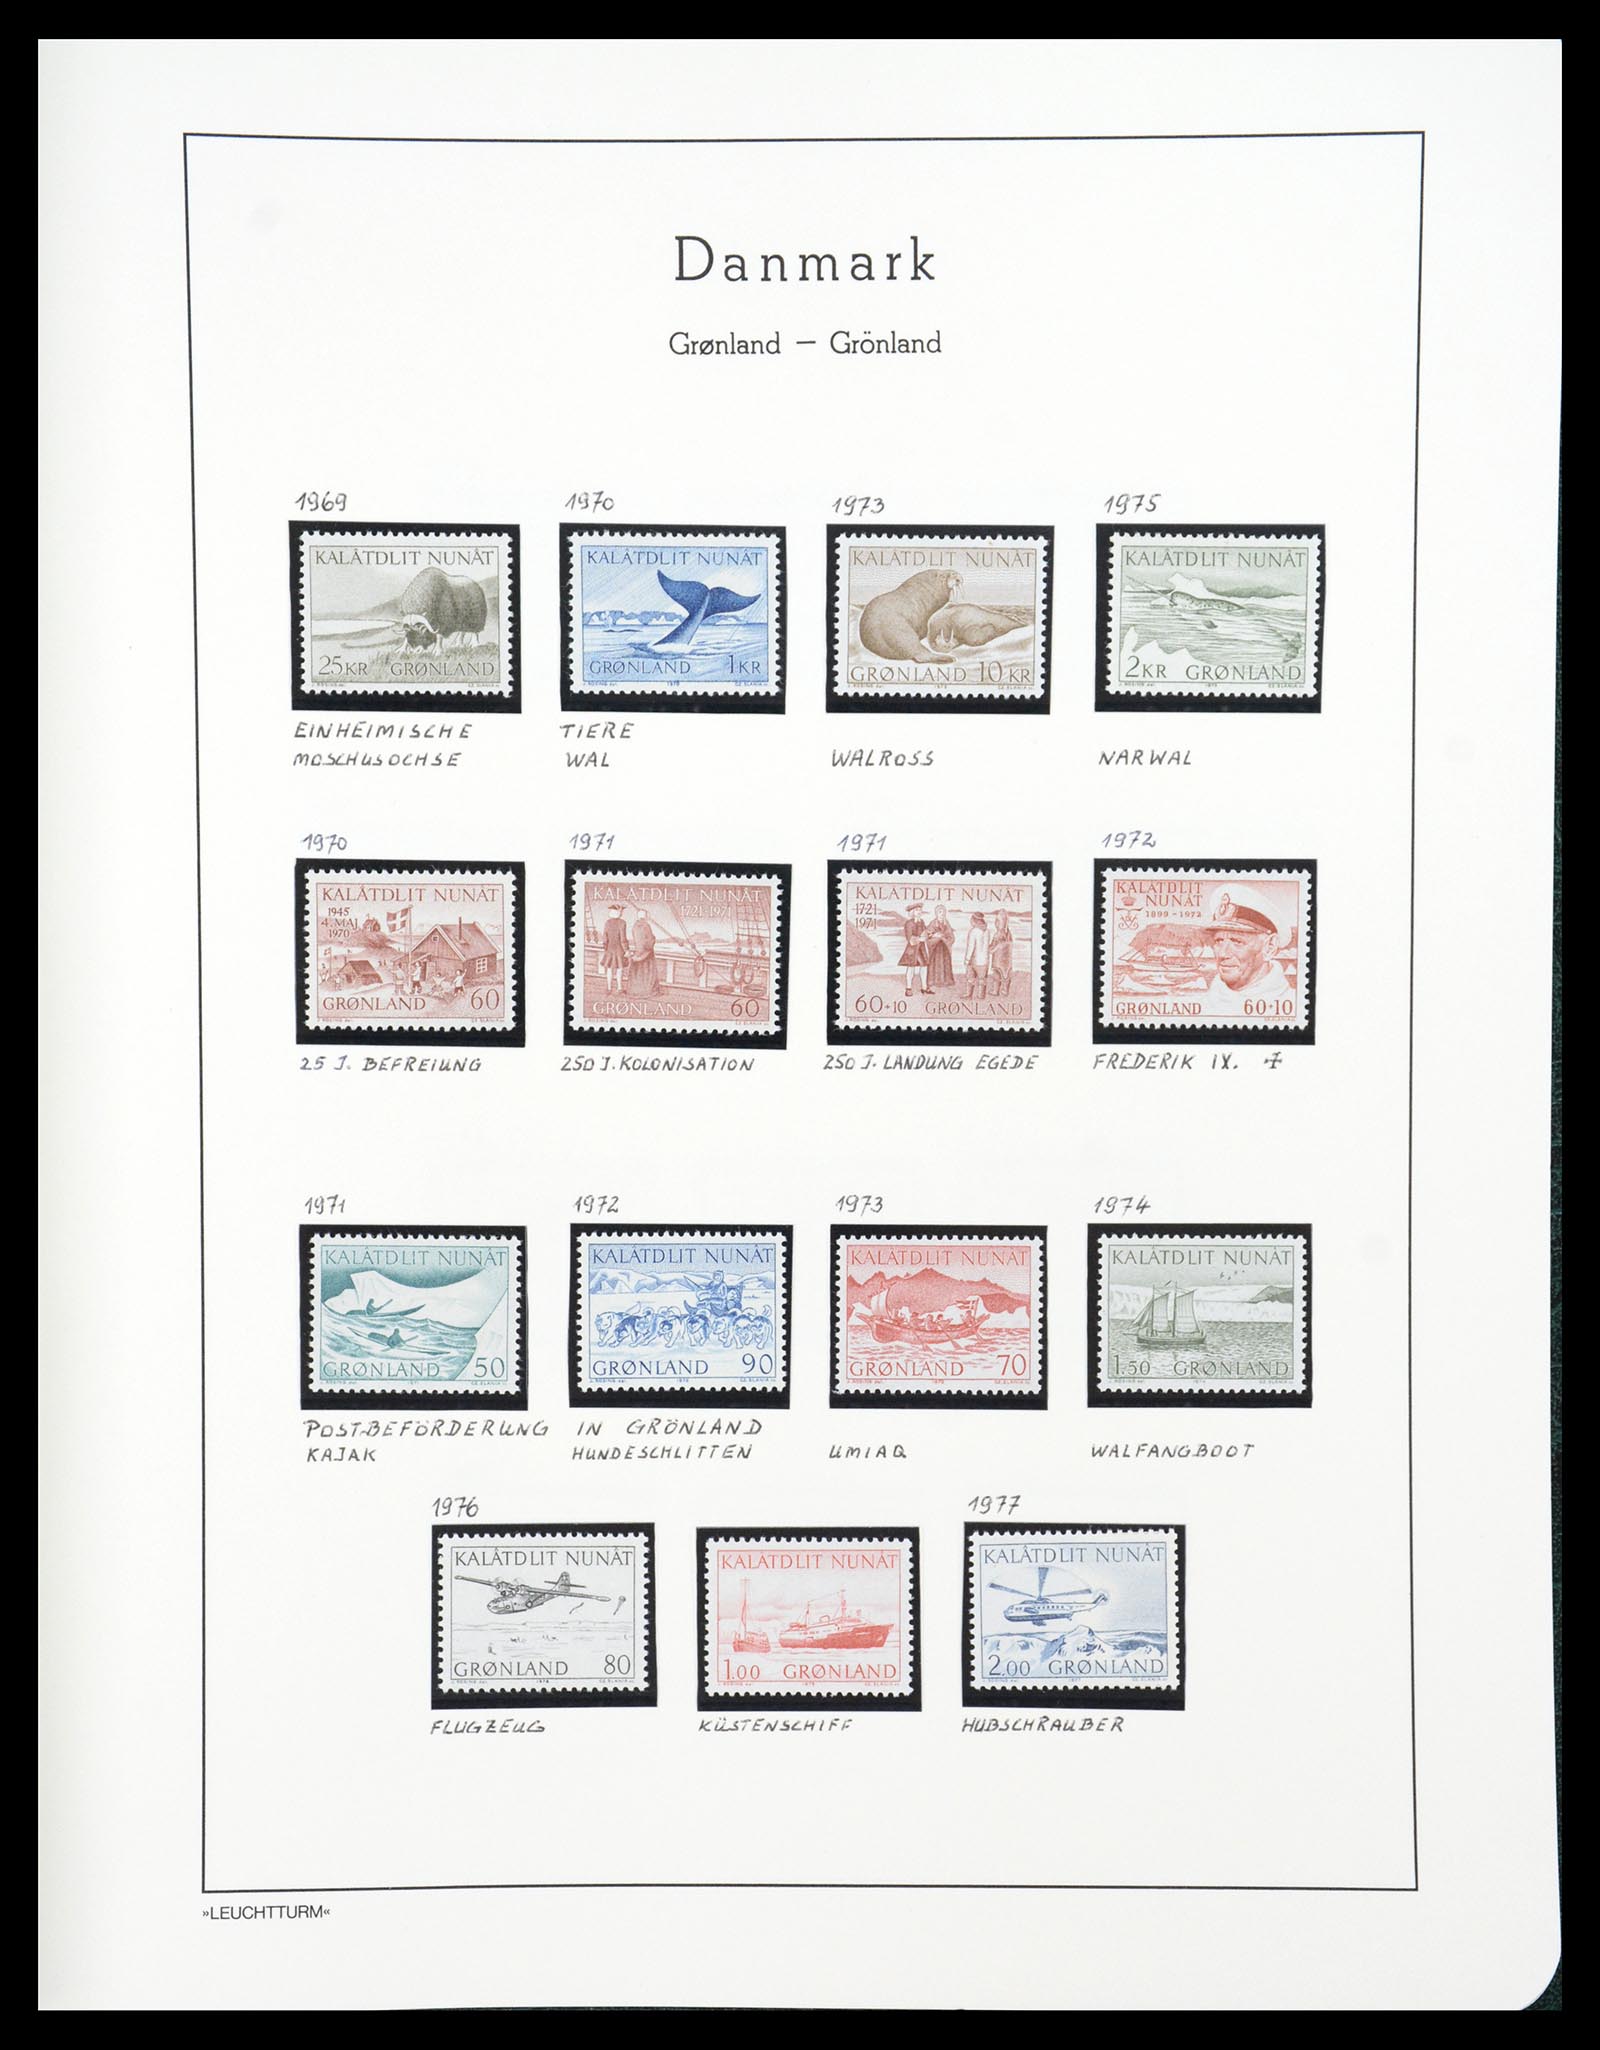 36612 178 - Stamp collection 36612 Denemarken 1851-1990.